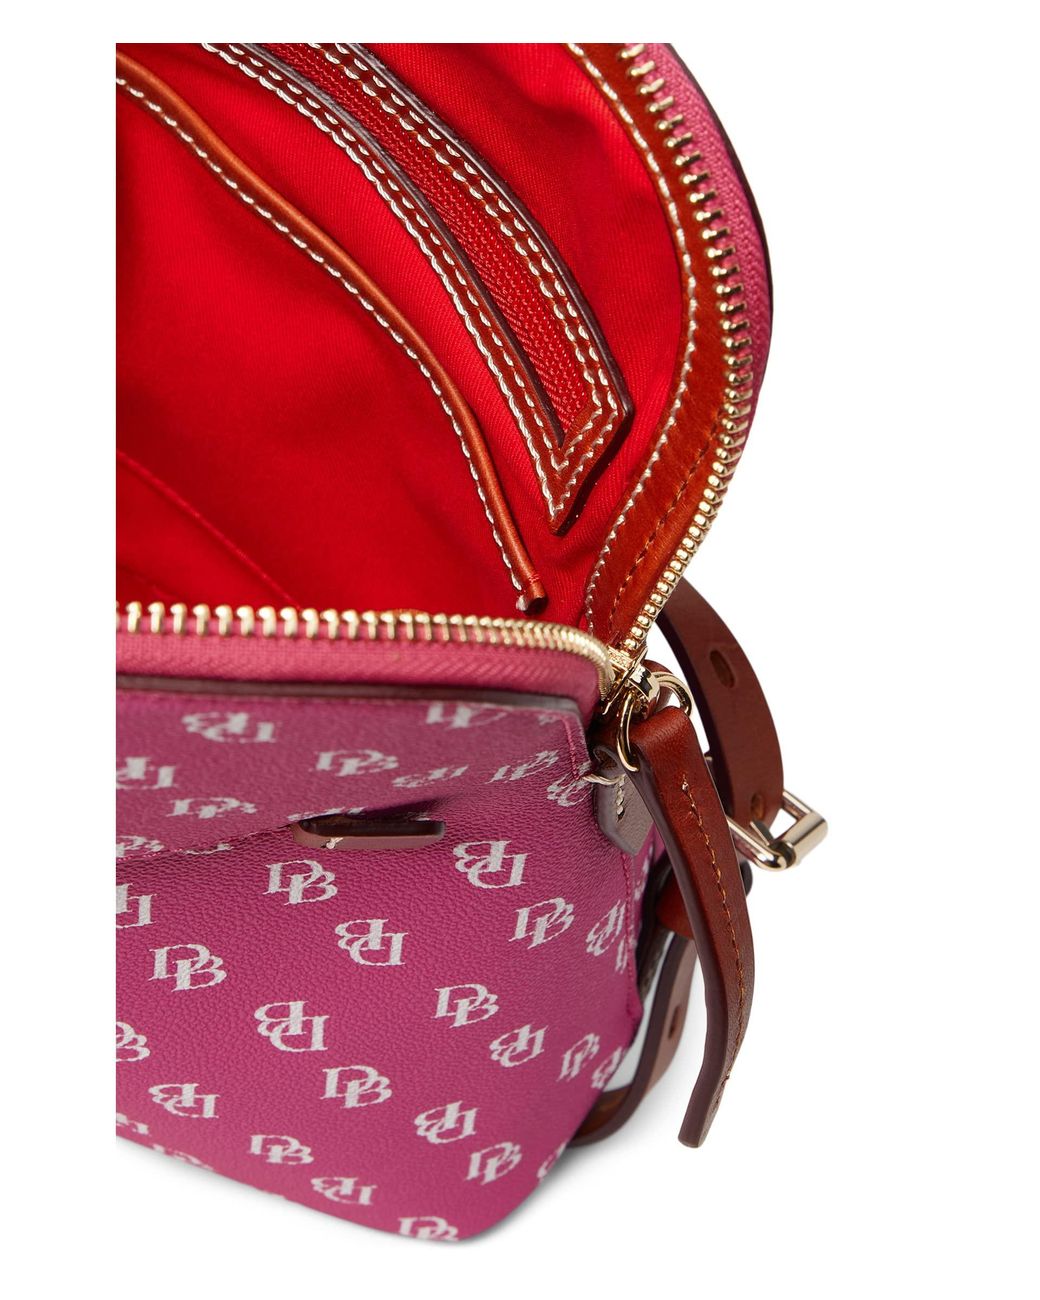 Dooney & Bourke St. Louis Cardinals Drawstring Shoulder Bag